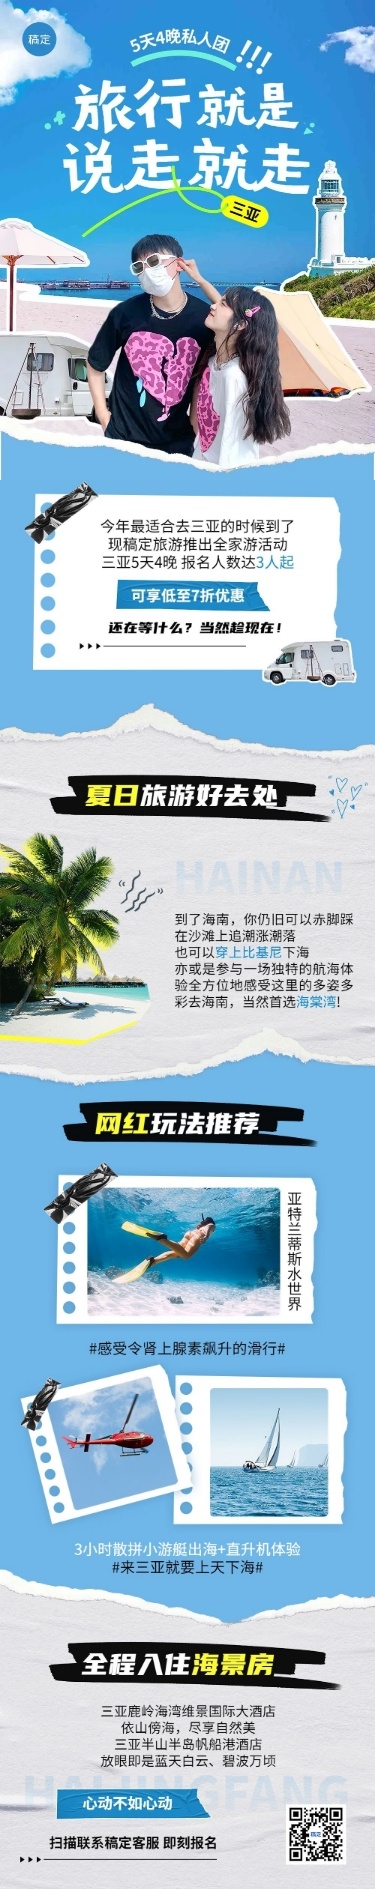 公众号旅游出行活动宣传撕纸风文章长图